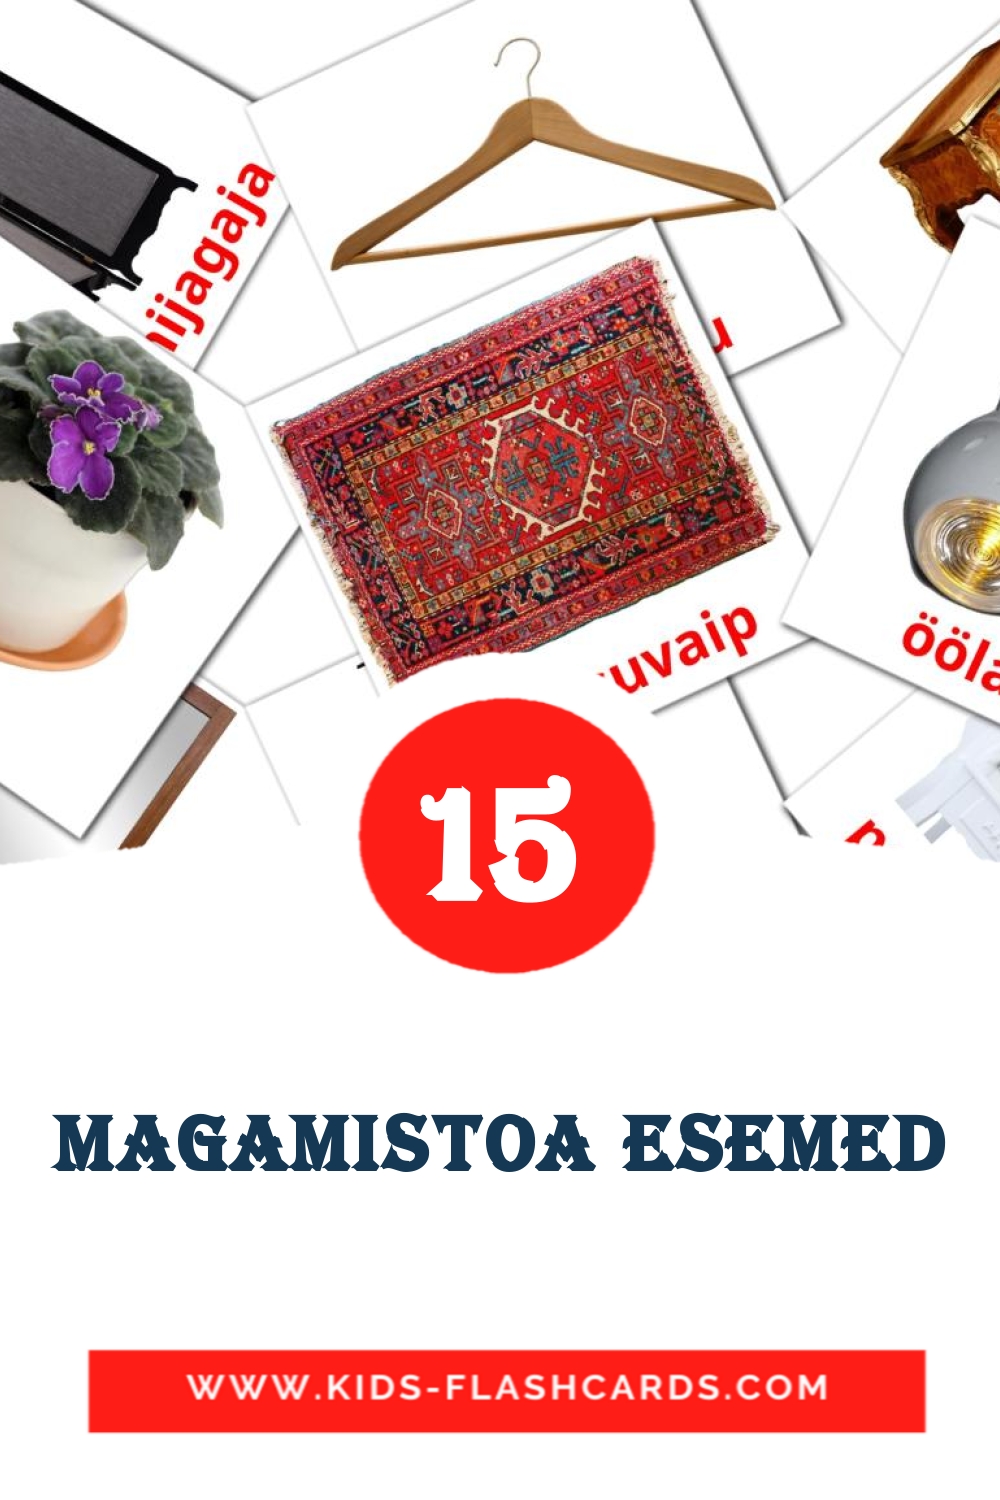 Magamistoa esemed на эстонском для Детского Сада (15 карточек)